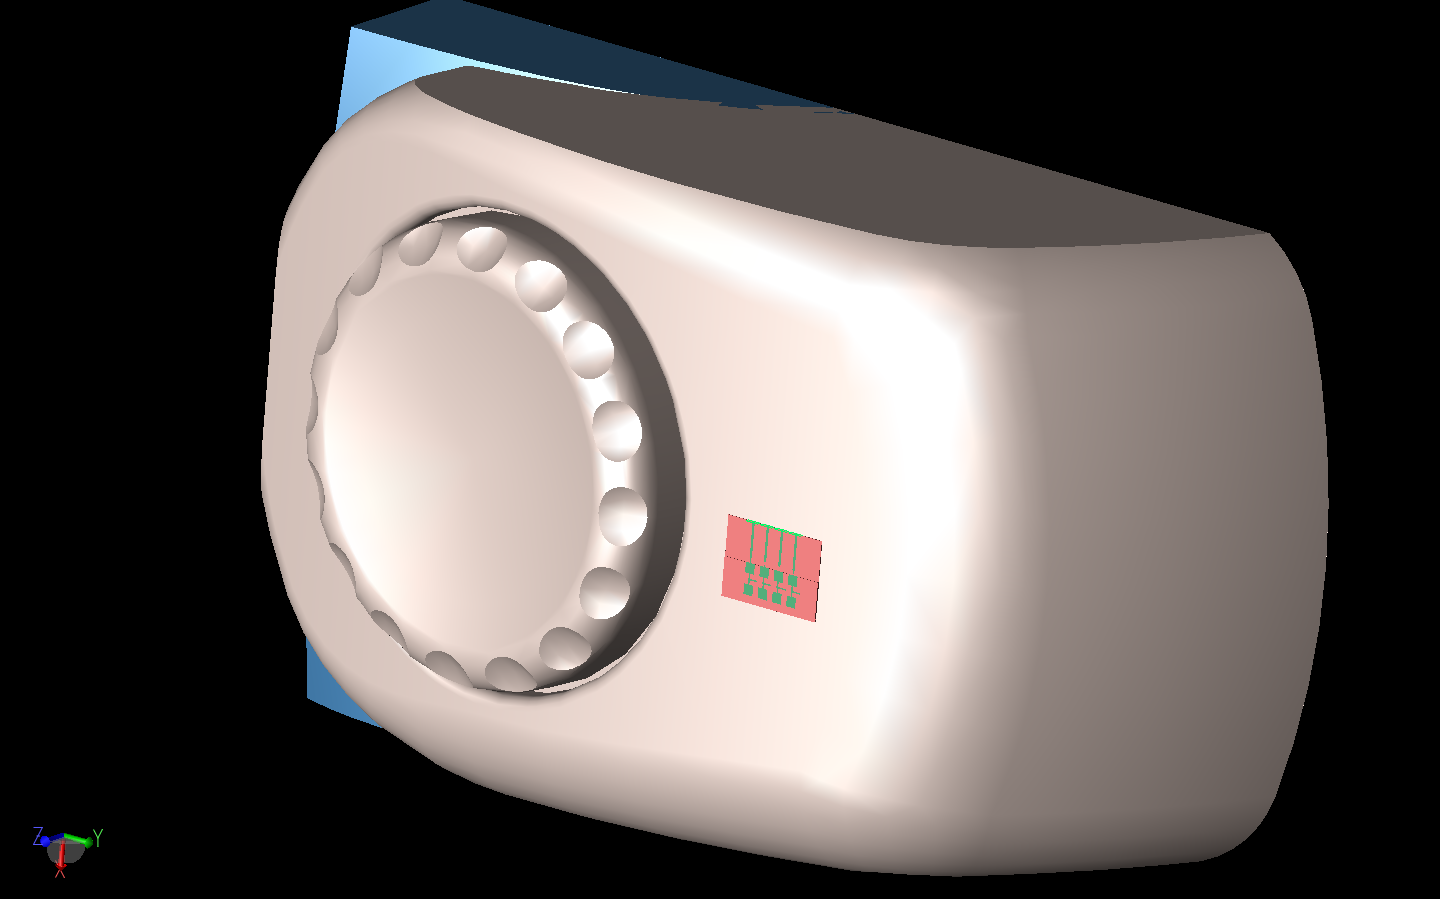 Figura 9: Debido al gran tamaño del espacio del problema, se utiliza una sección del modelo de auricular/cabeza para las simulaciones reales.